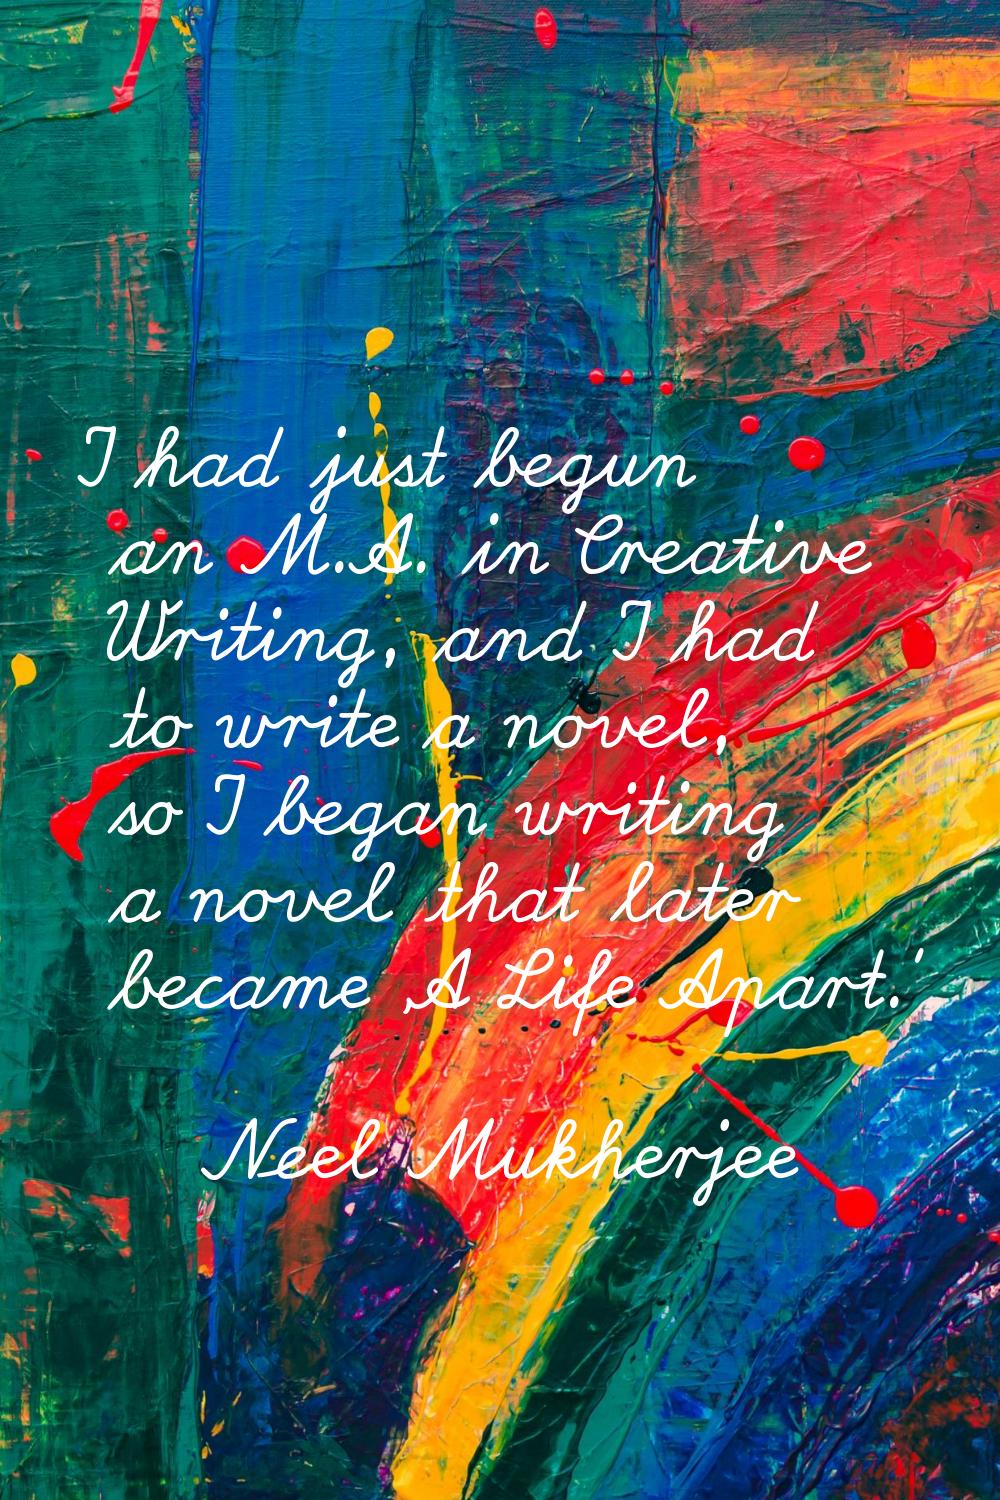 I had just begun an M.A. in Creative Writing, and I had to write a novel, so I began writing a nove